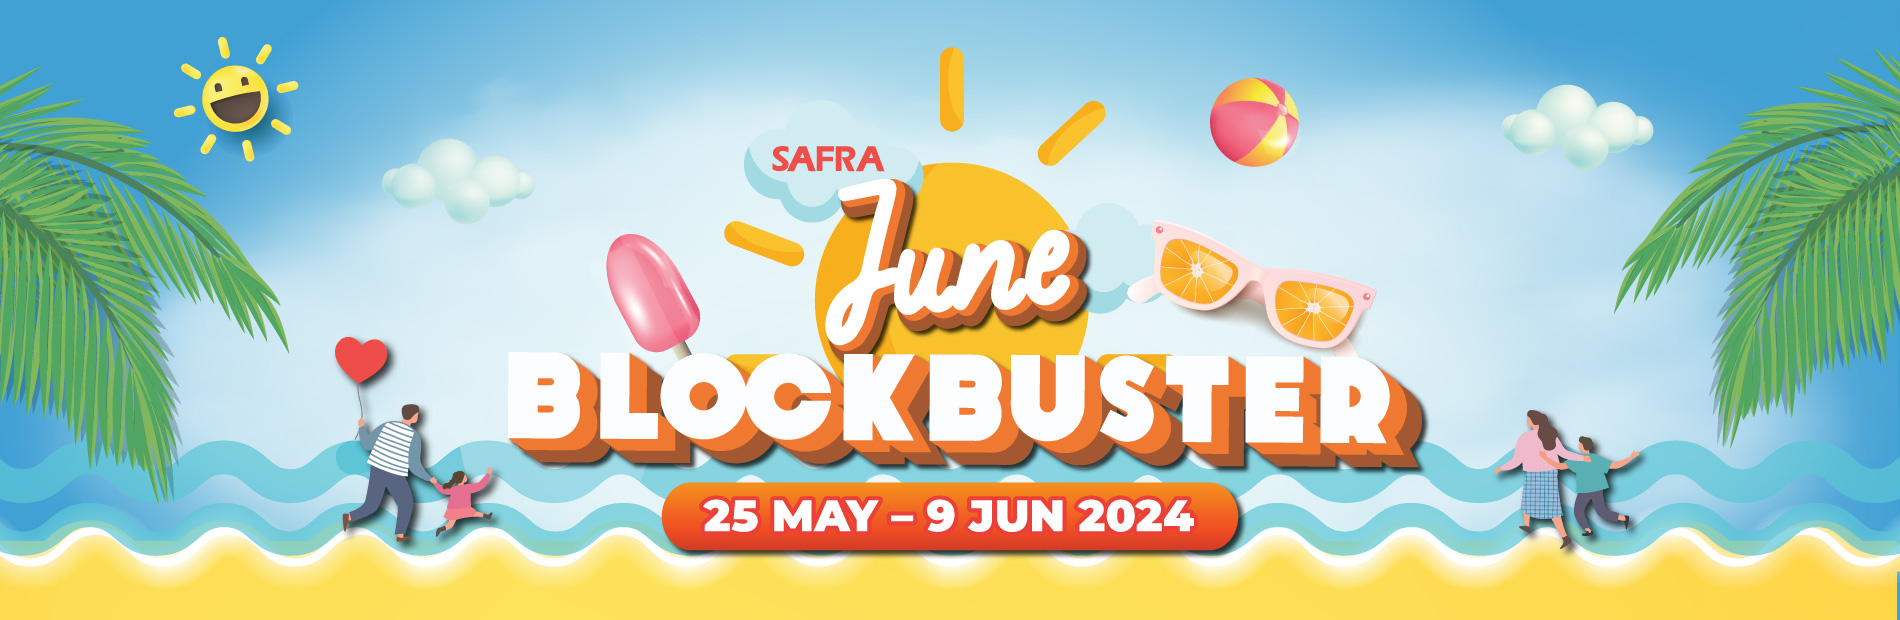 SAFRA June Blockbuster 2024